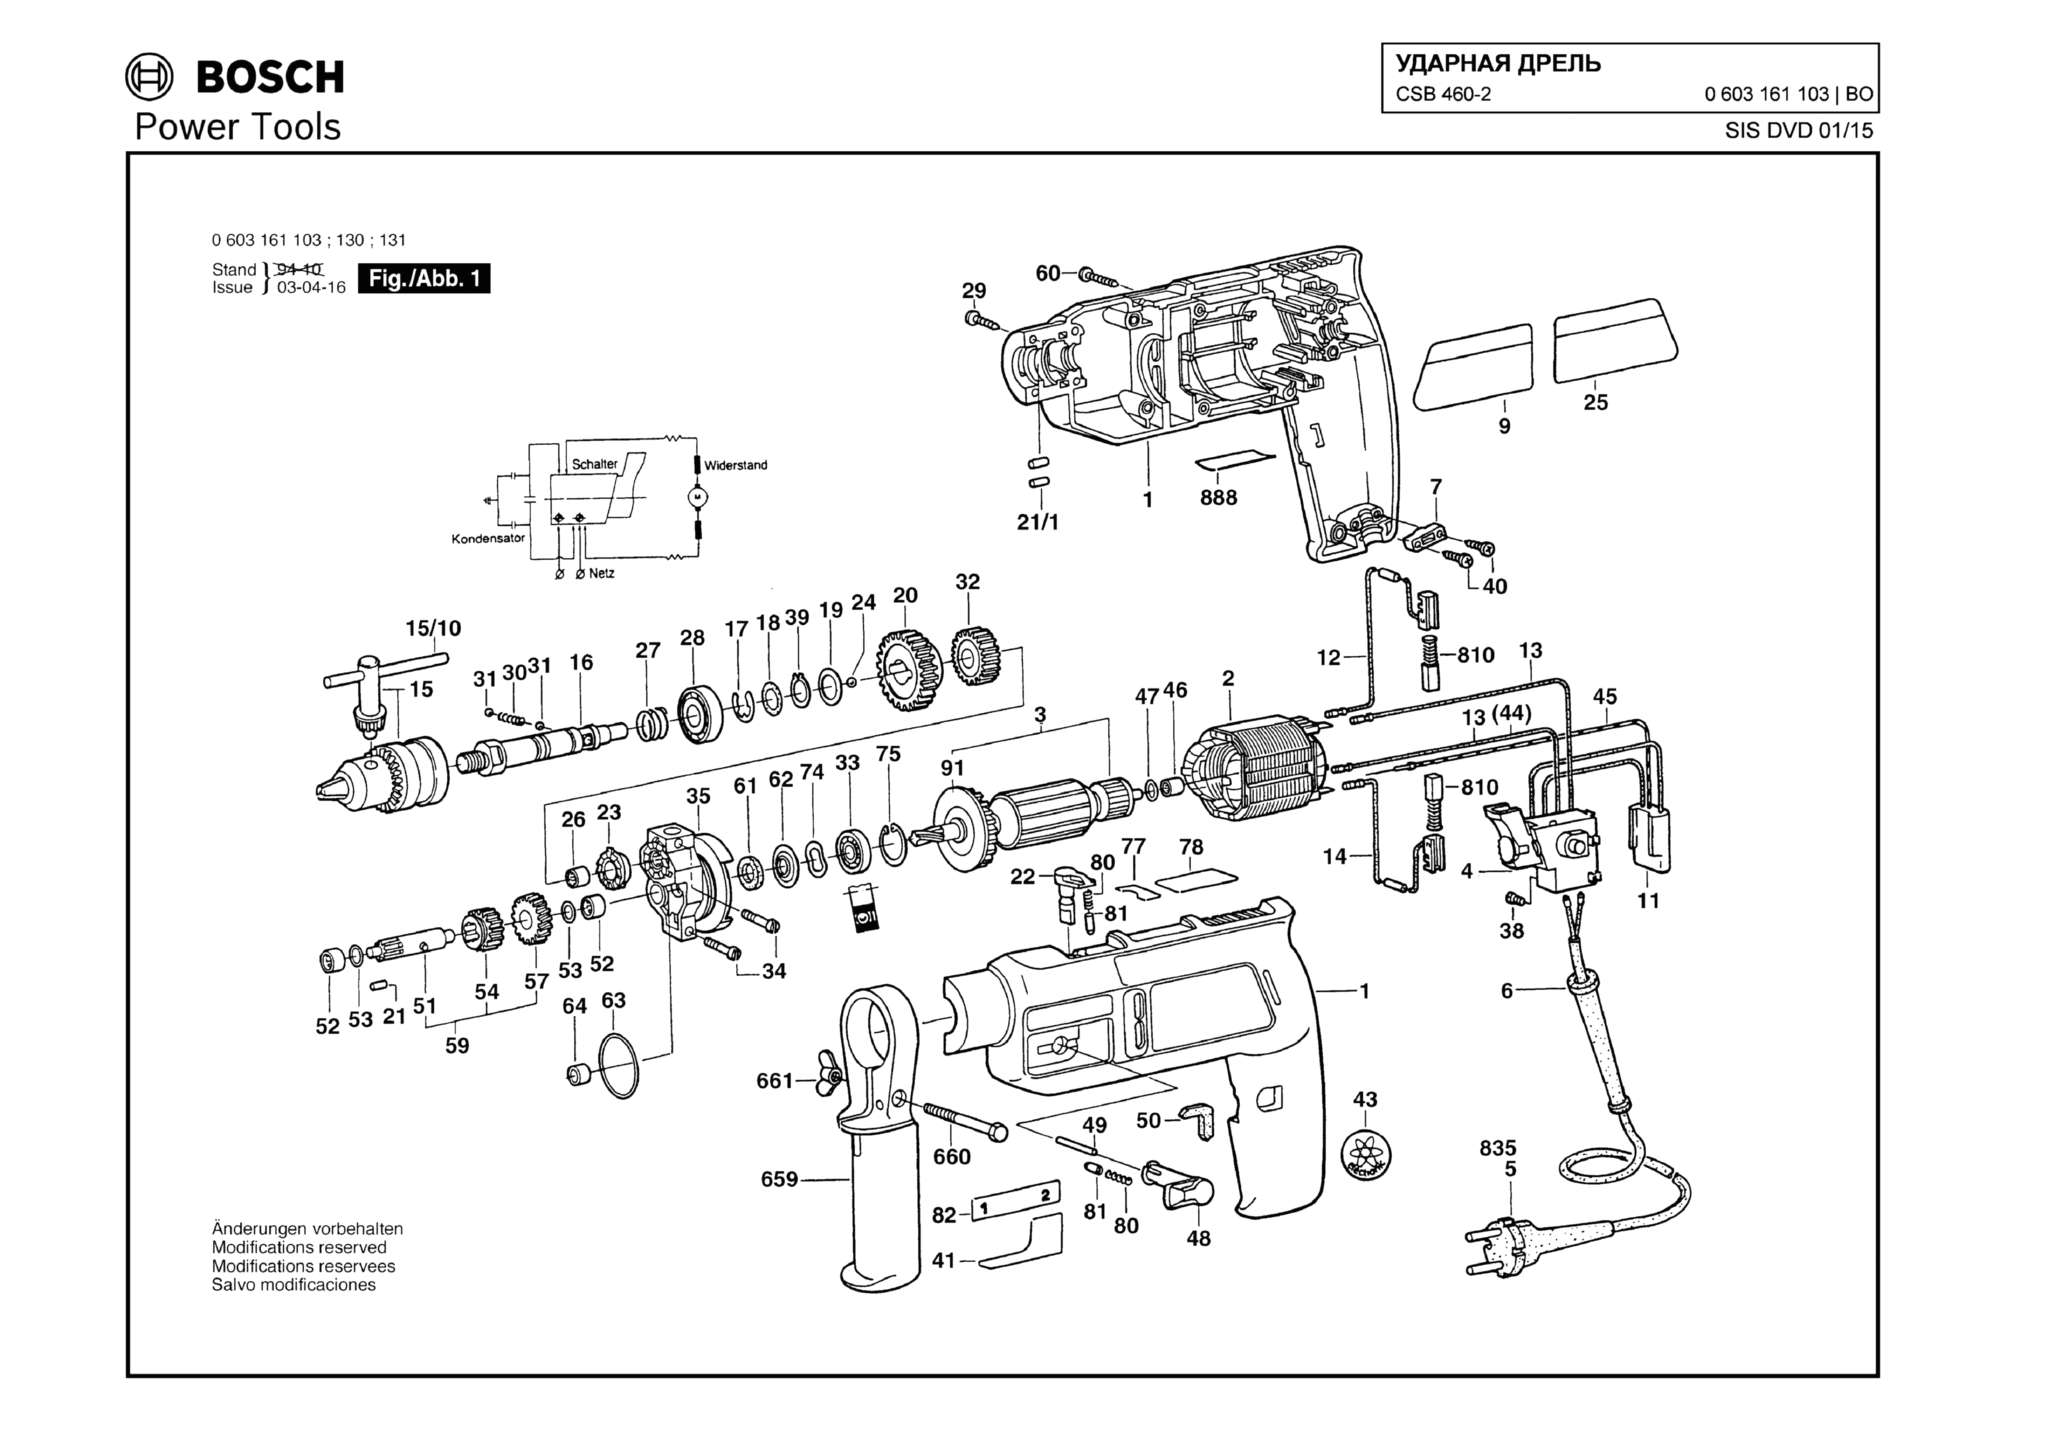 Запчасти, схема и деталировка Bosch CSB 460-2 (ТИП 0603161103)